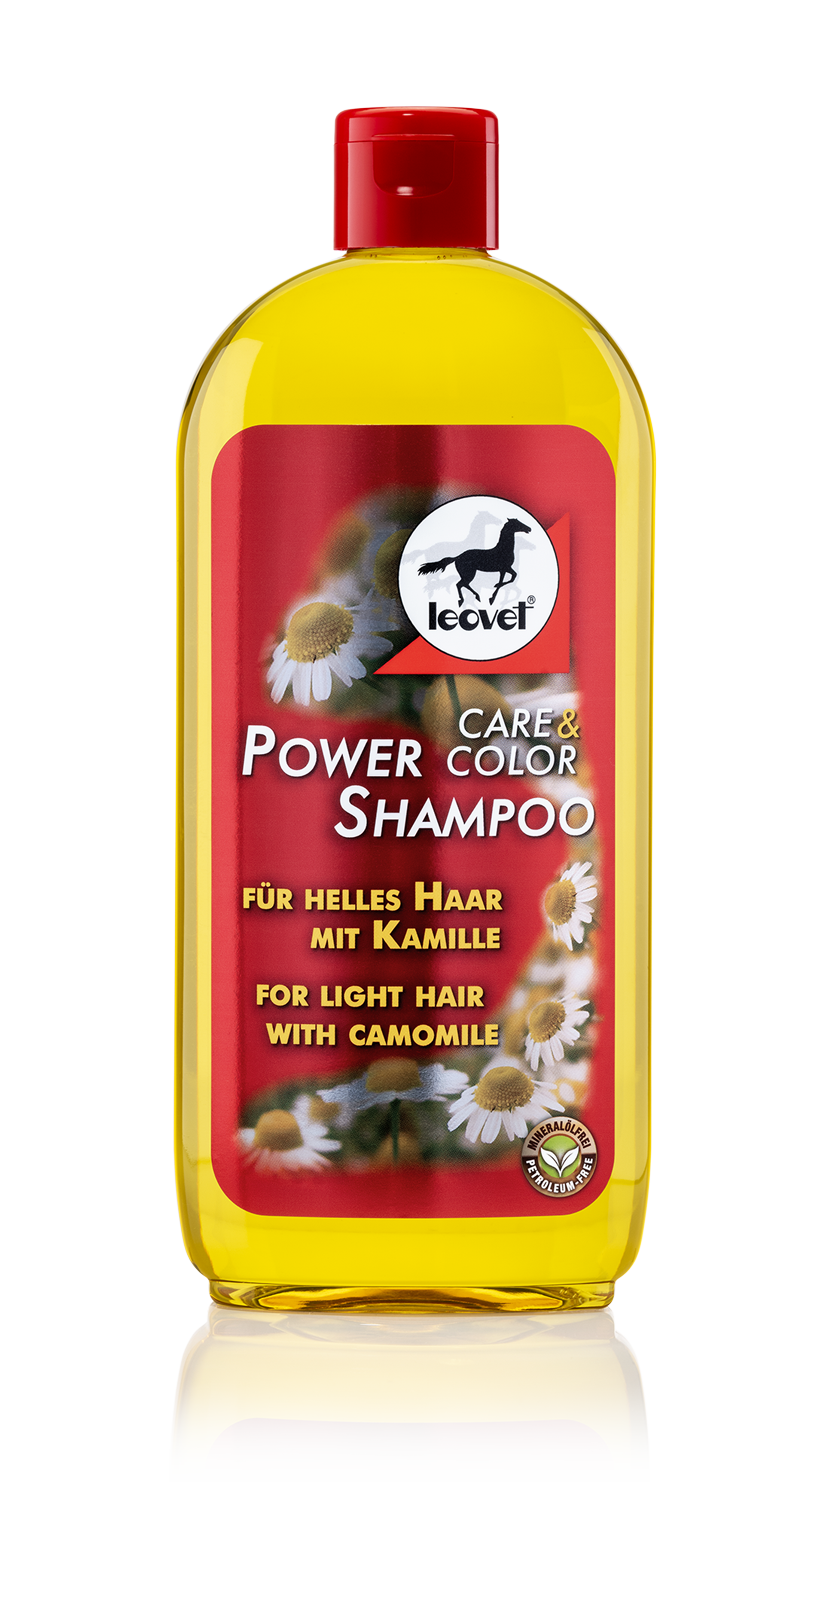  Leovet Power Shampoo Kamille